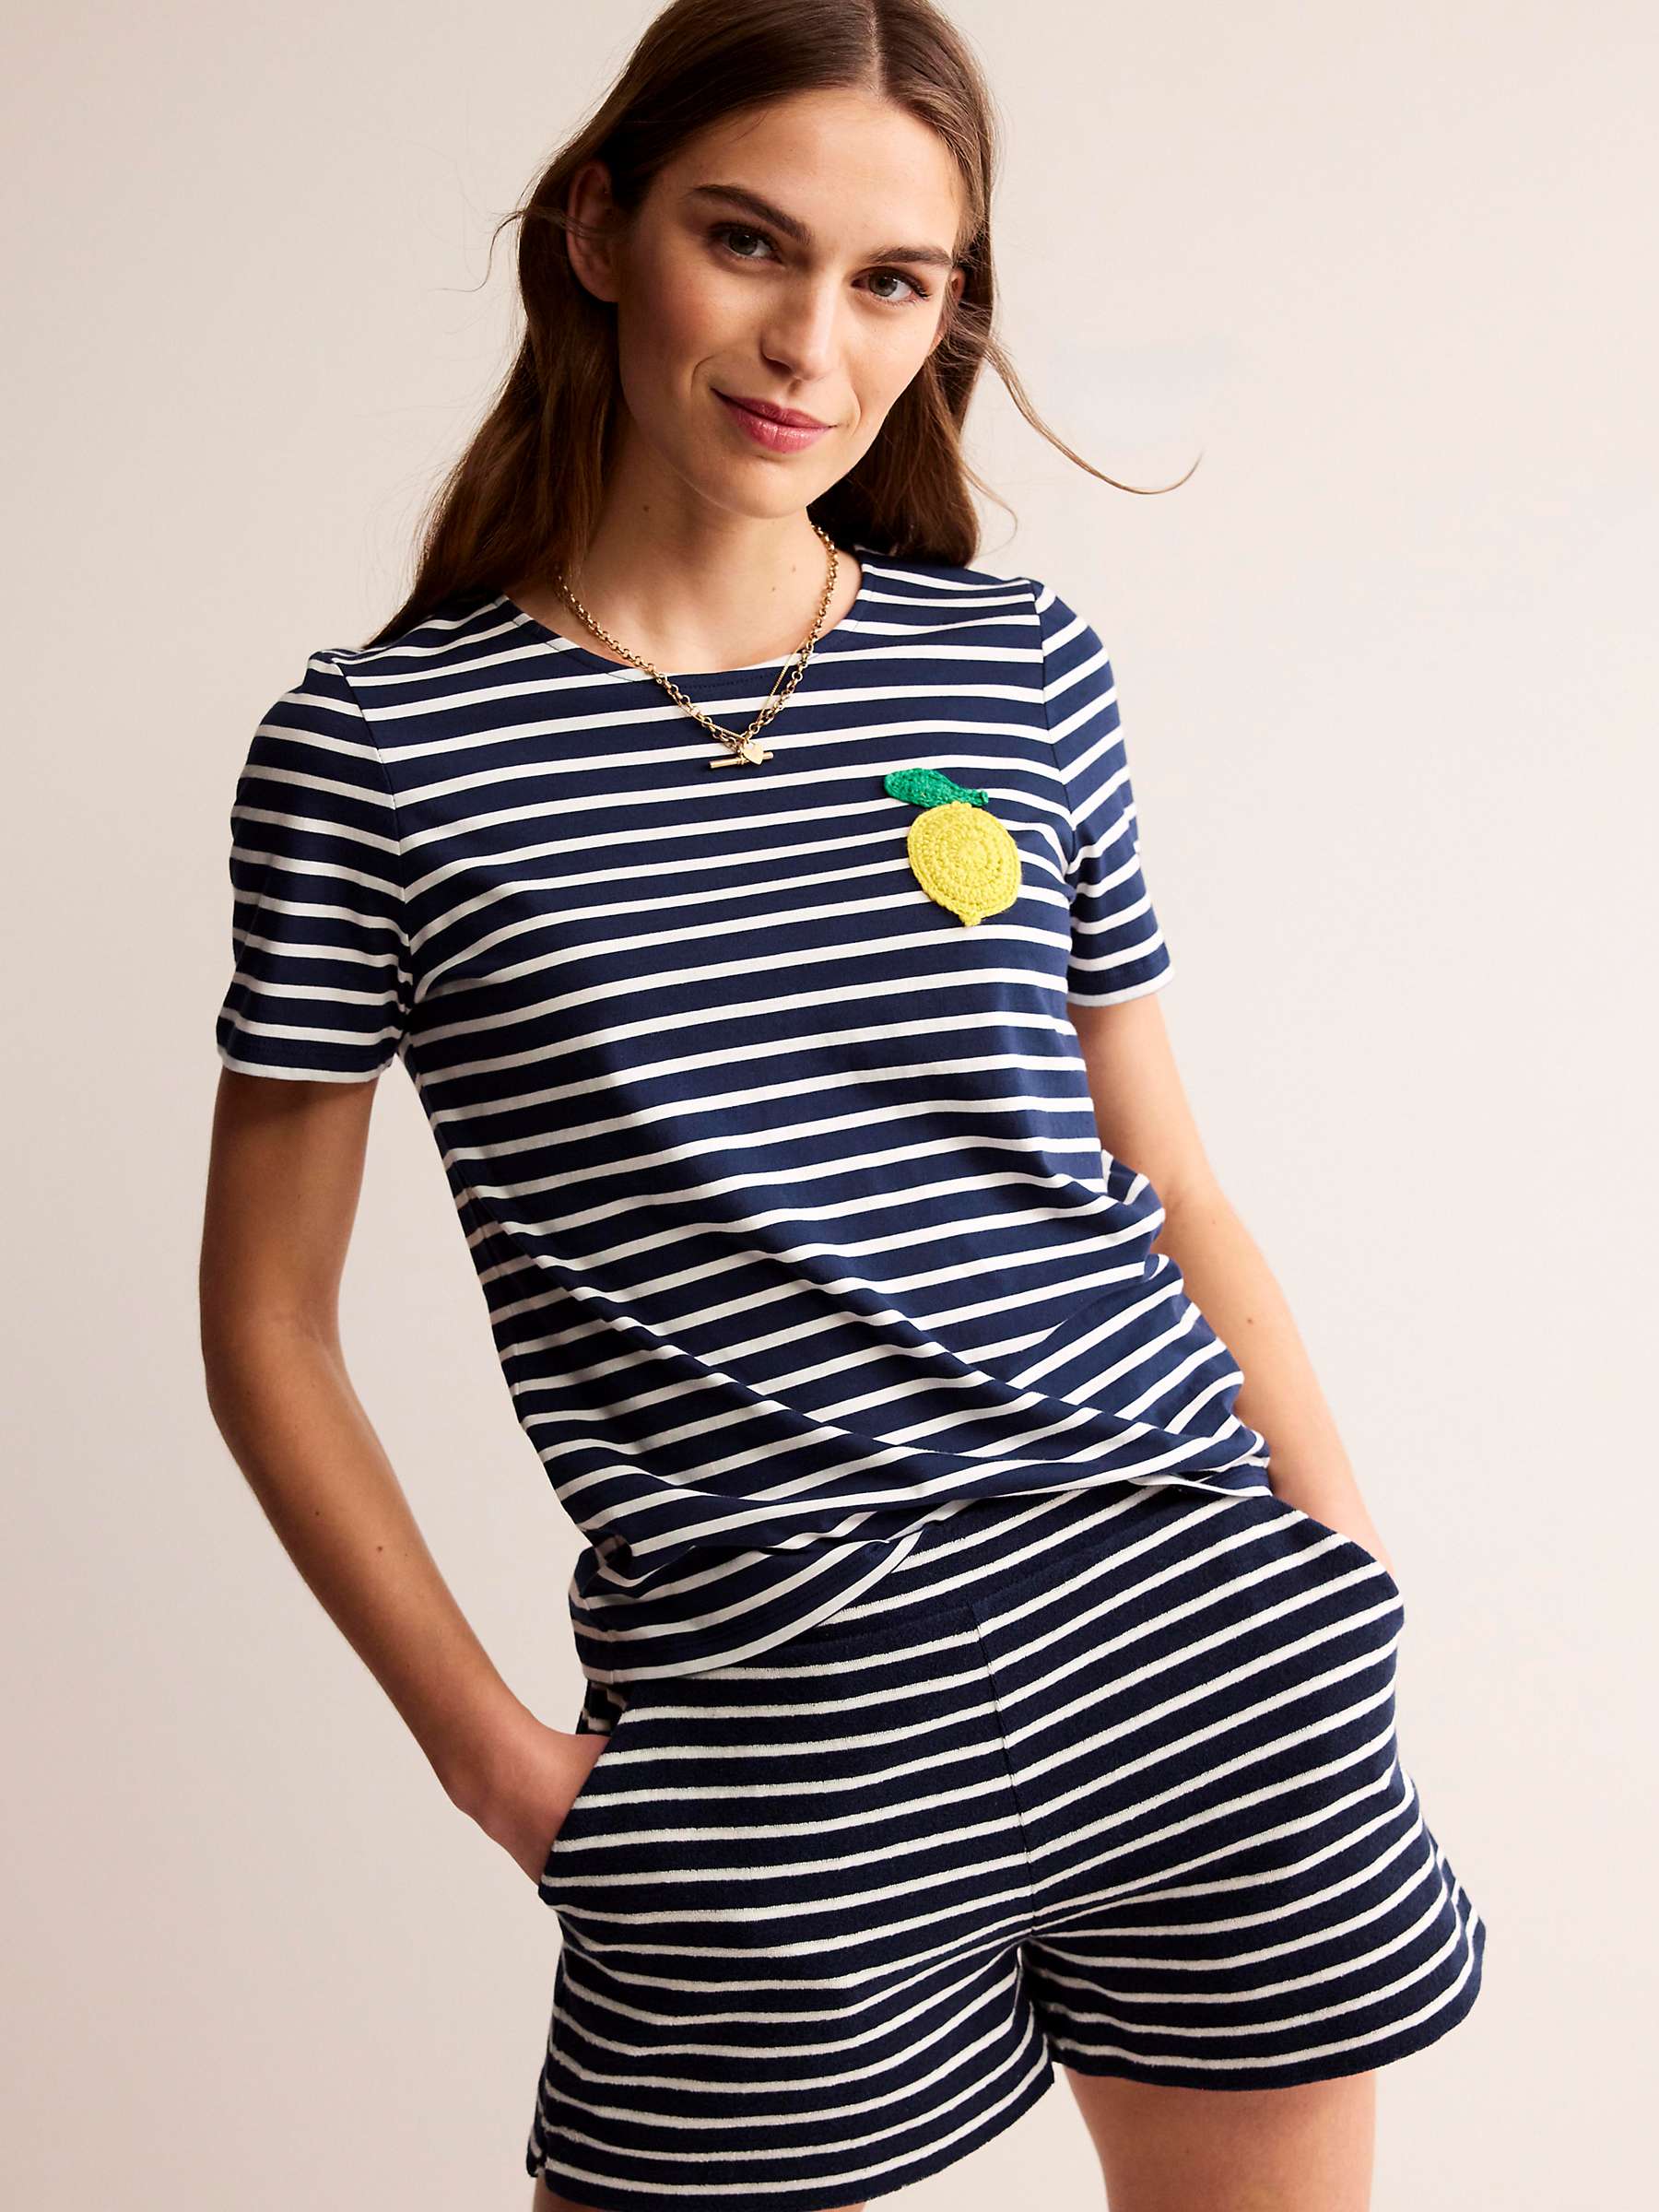 Buy Boden Crochet Lemon Striped T-shirt, Navy/Multi Online at johnlewis.com